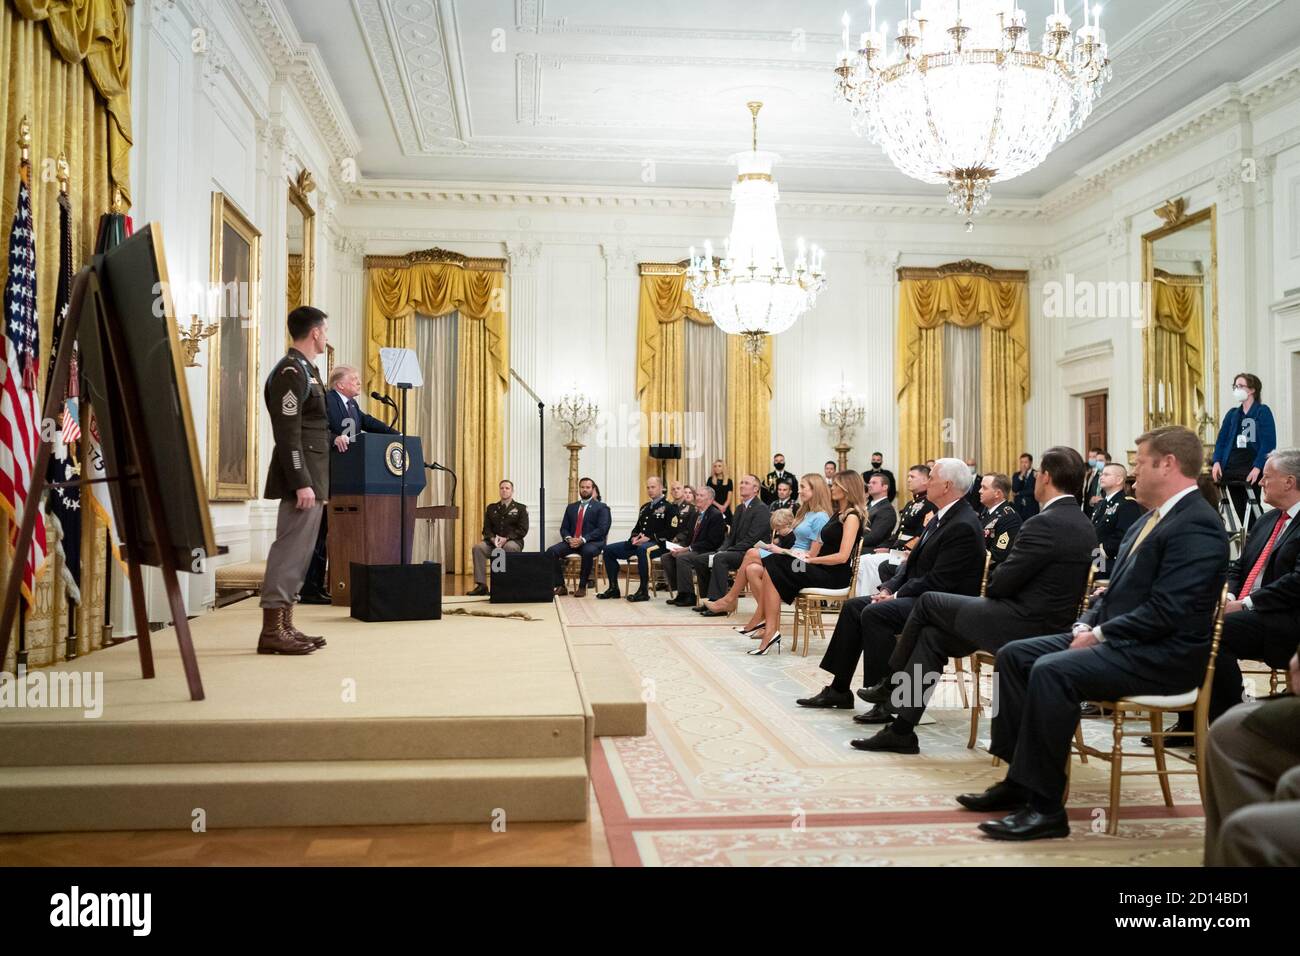 El presidente Trump presenta la Medalla de honor. El presidente Donald J. Trump, se unió al escenario por el Sgt del Ejército de los Estados Unidos, ganador de la Medalla de honor. El mayor Thomas Patrick Payne, hace comentarios durante la ceremonia de la Medalla de honor el viernes, 11 de septiembre de 2020, en el Salón este de la Casa Blanca. Foto de stock